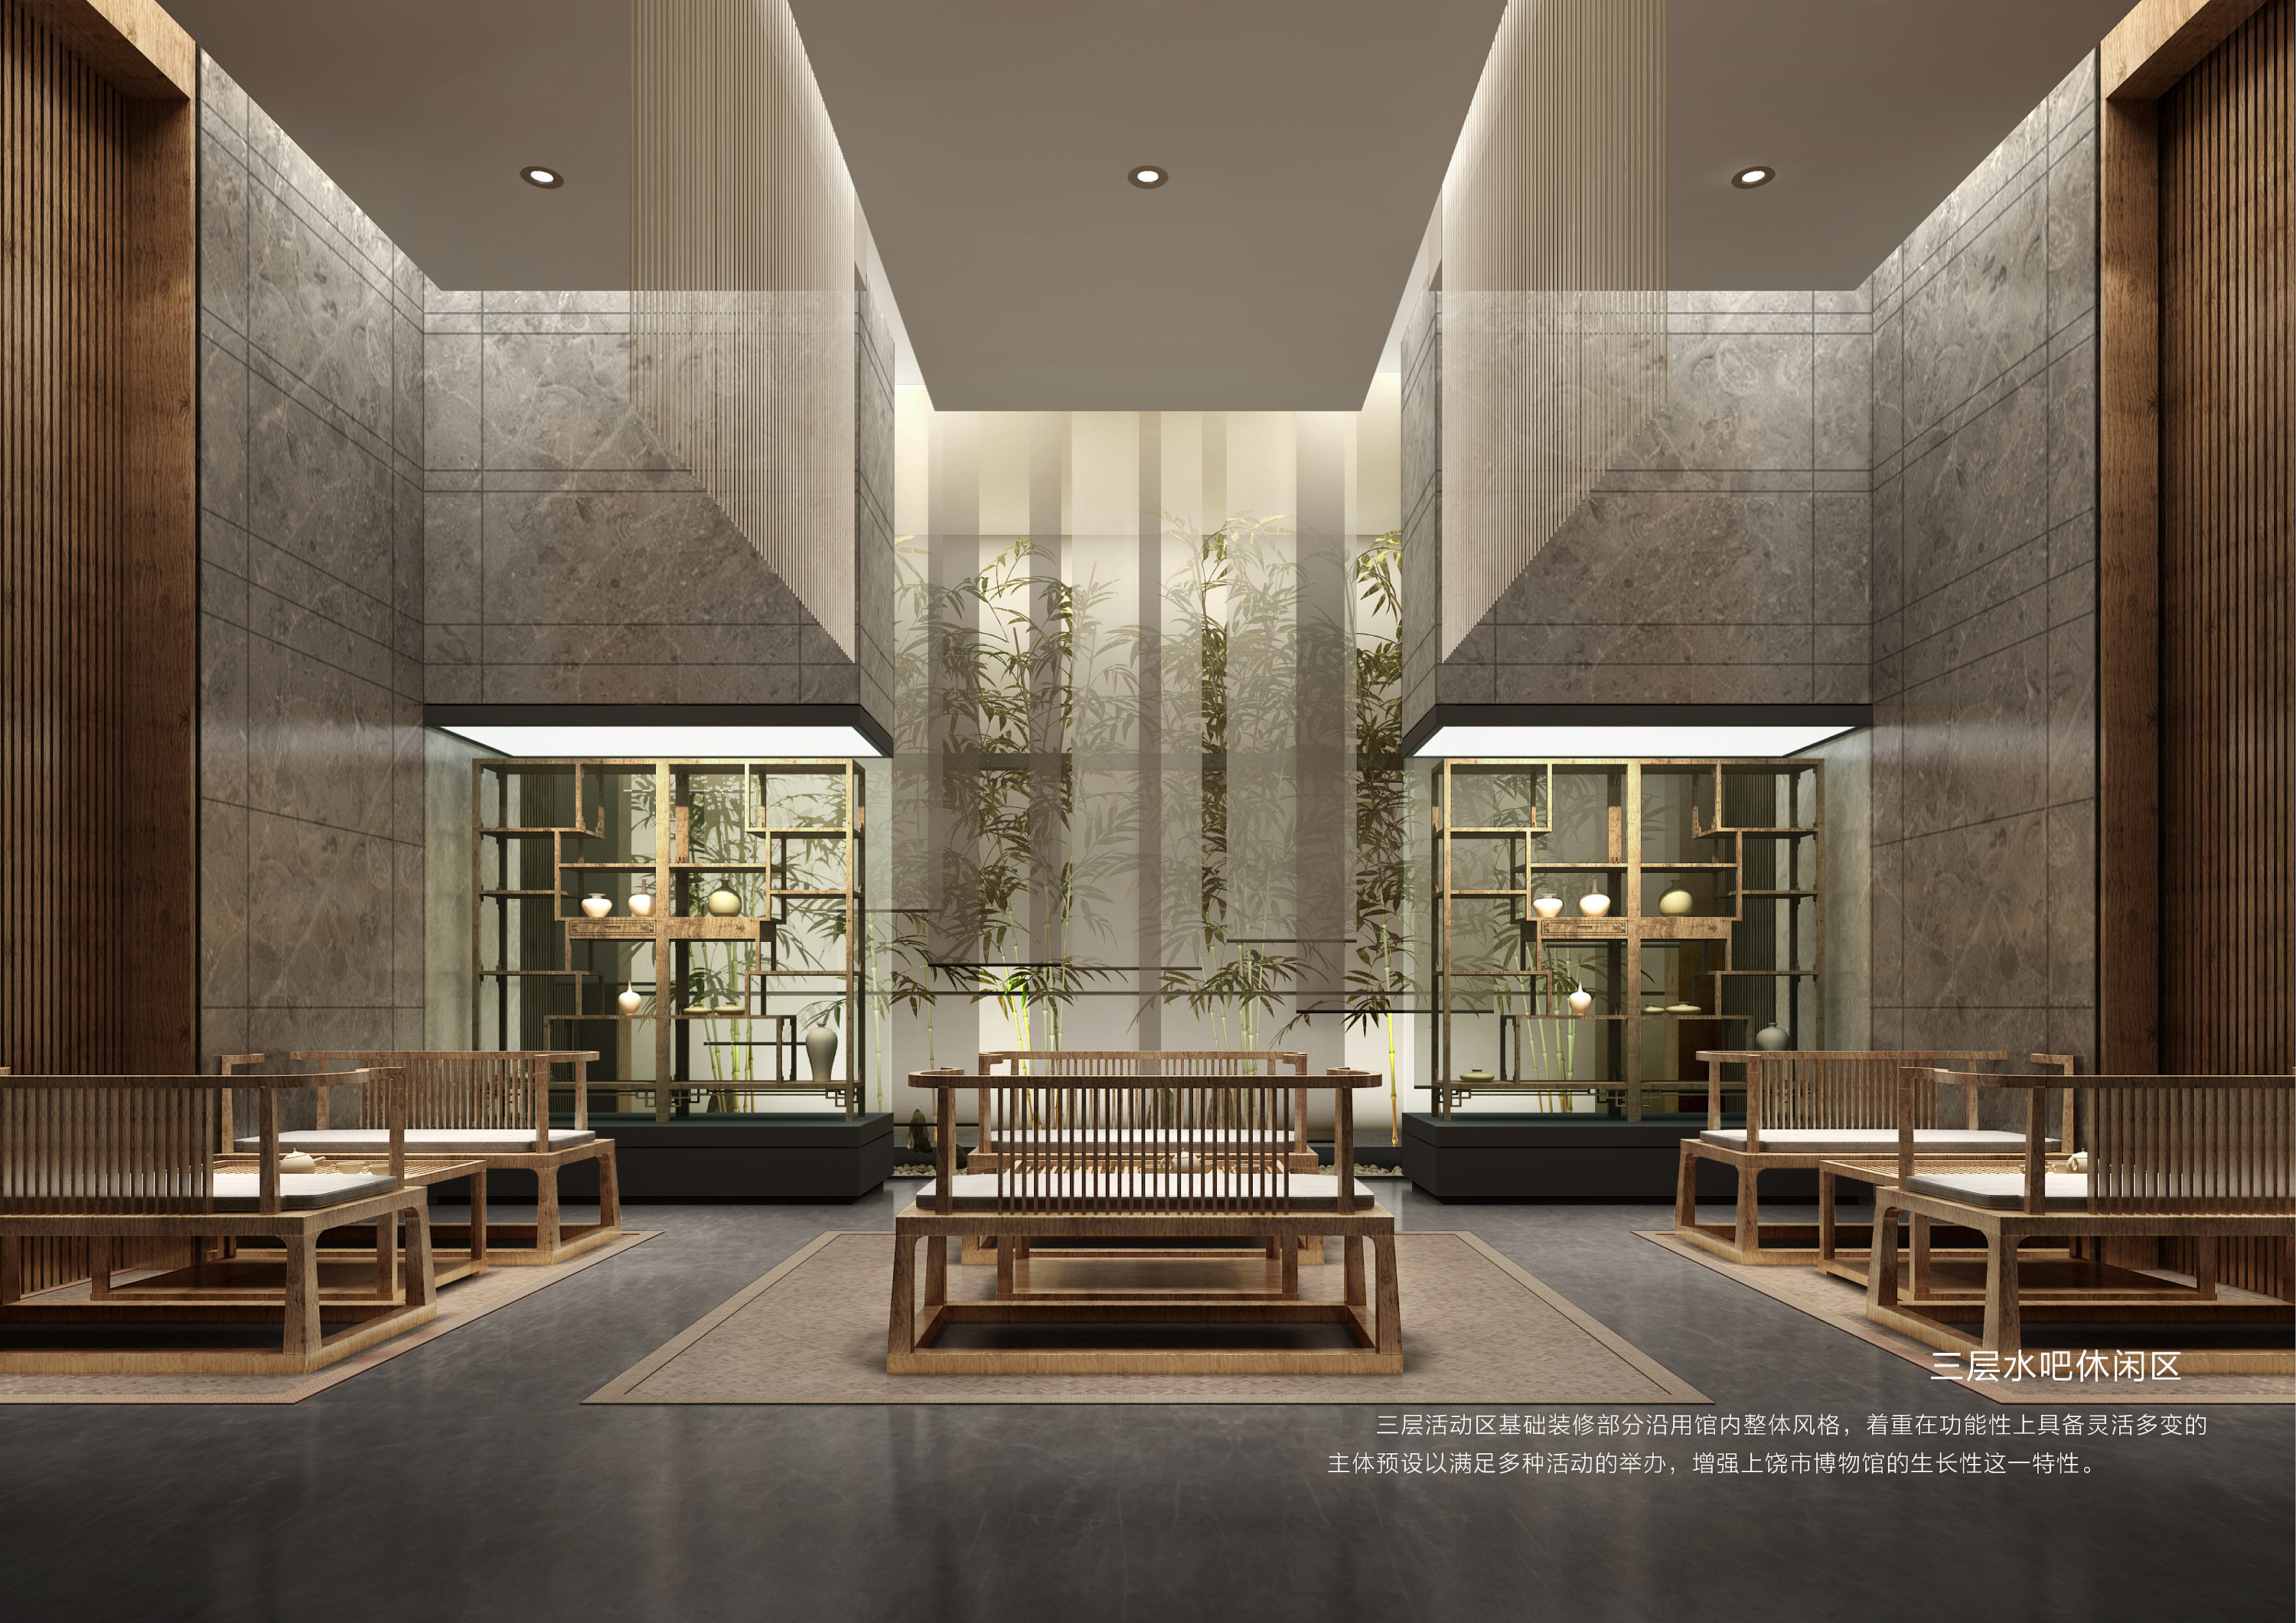 【竹园】客厅软装方案-传统中式客厅软装方案-软装搭配方案/2021-美间（软装采购助手）